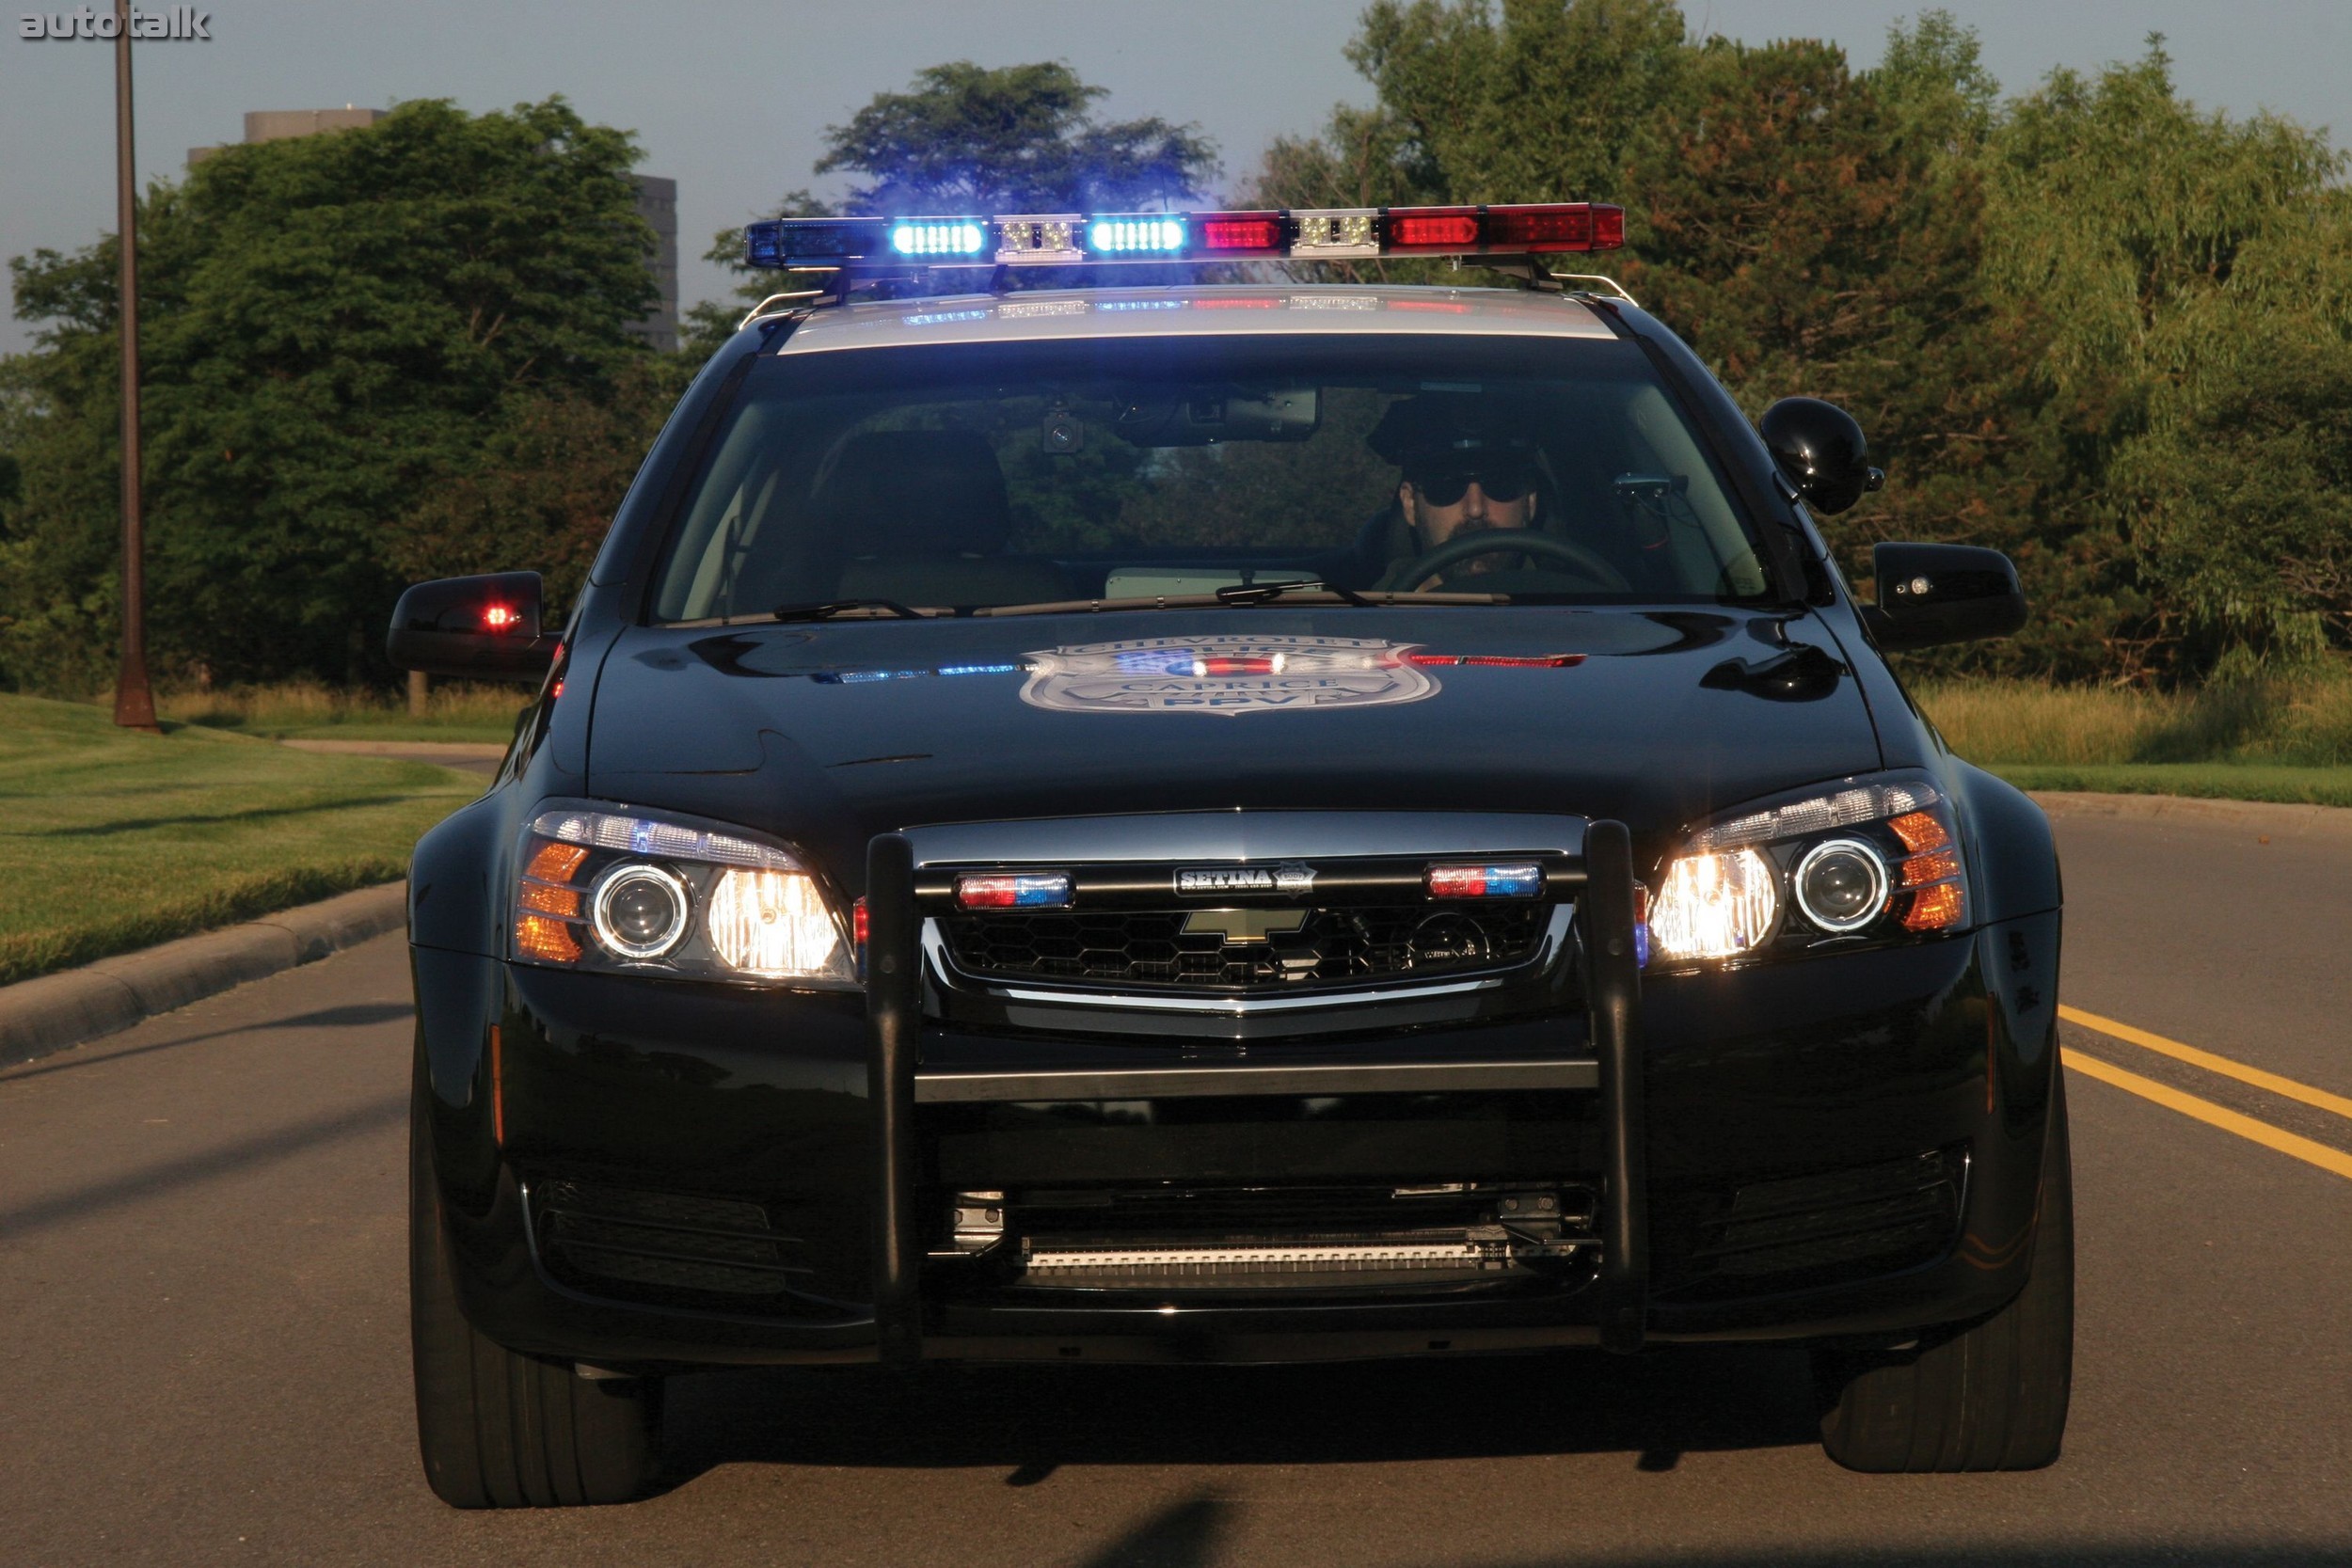 Полицейская машина уезжает. Chevrolet Caprice Police Interceptor. Chevrolet Caprice Police 2010 года. Chevrolet trailblazer Police Interceptor. Chevrolet Caprice Police Patrol vehicle.